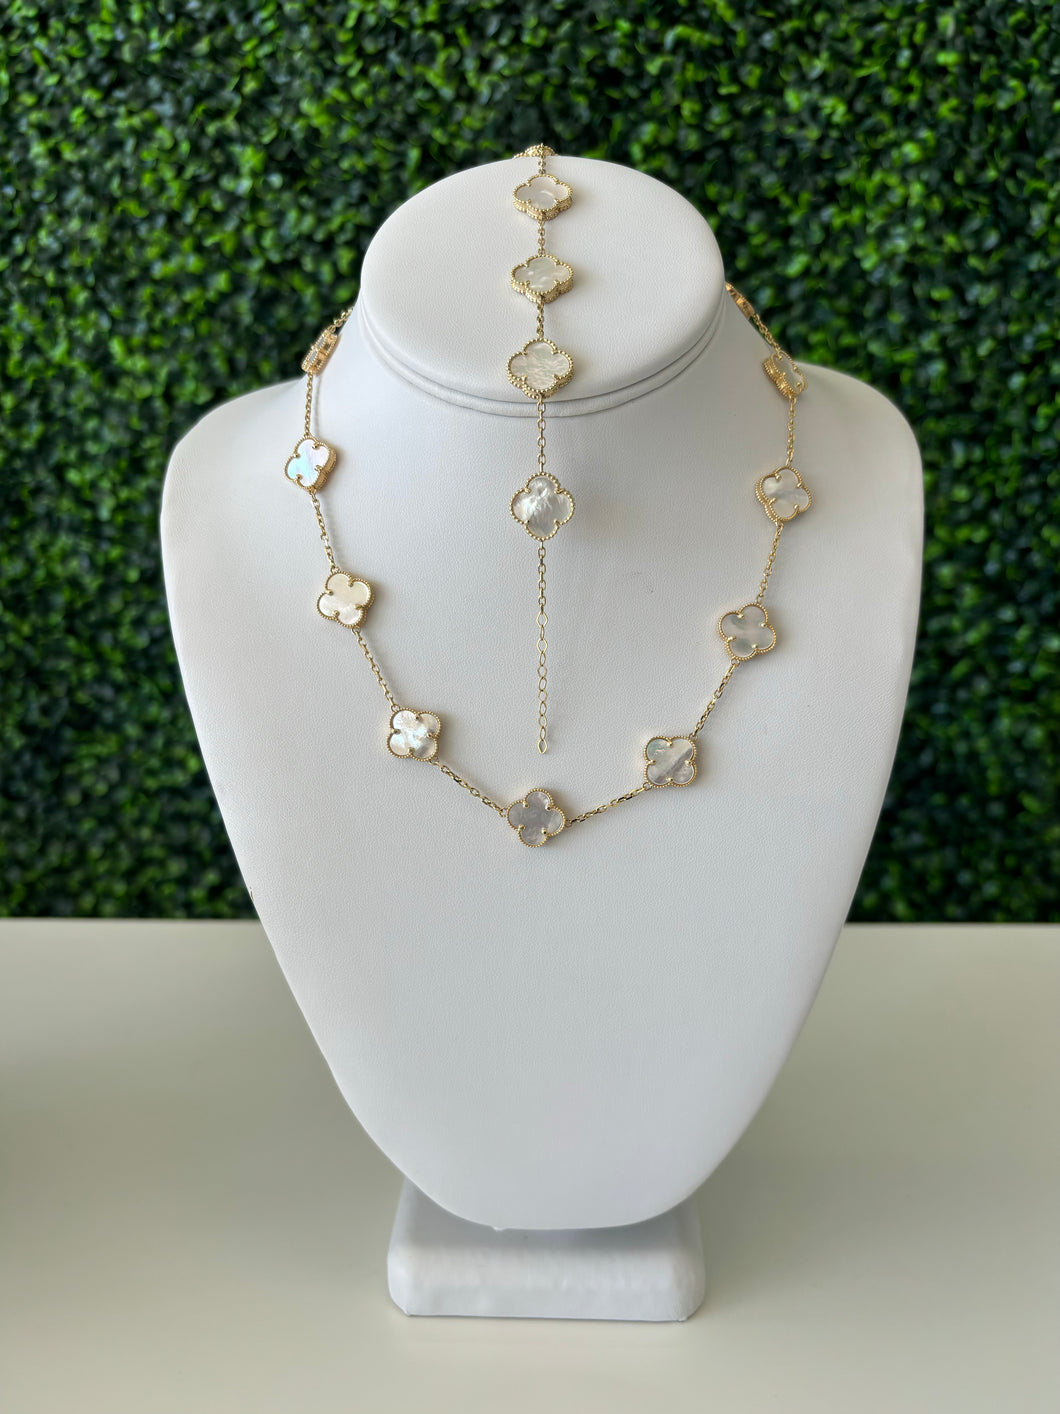 14kt Gold White Clover Necklace & Bracelet Set